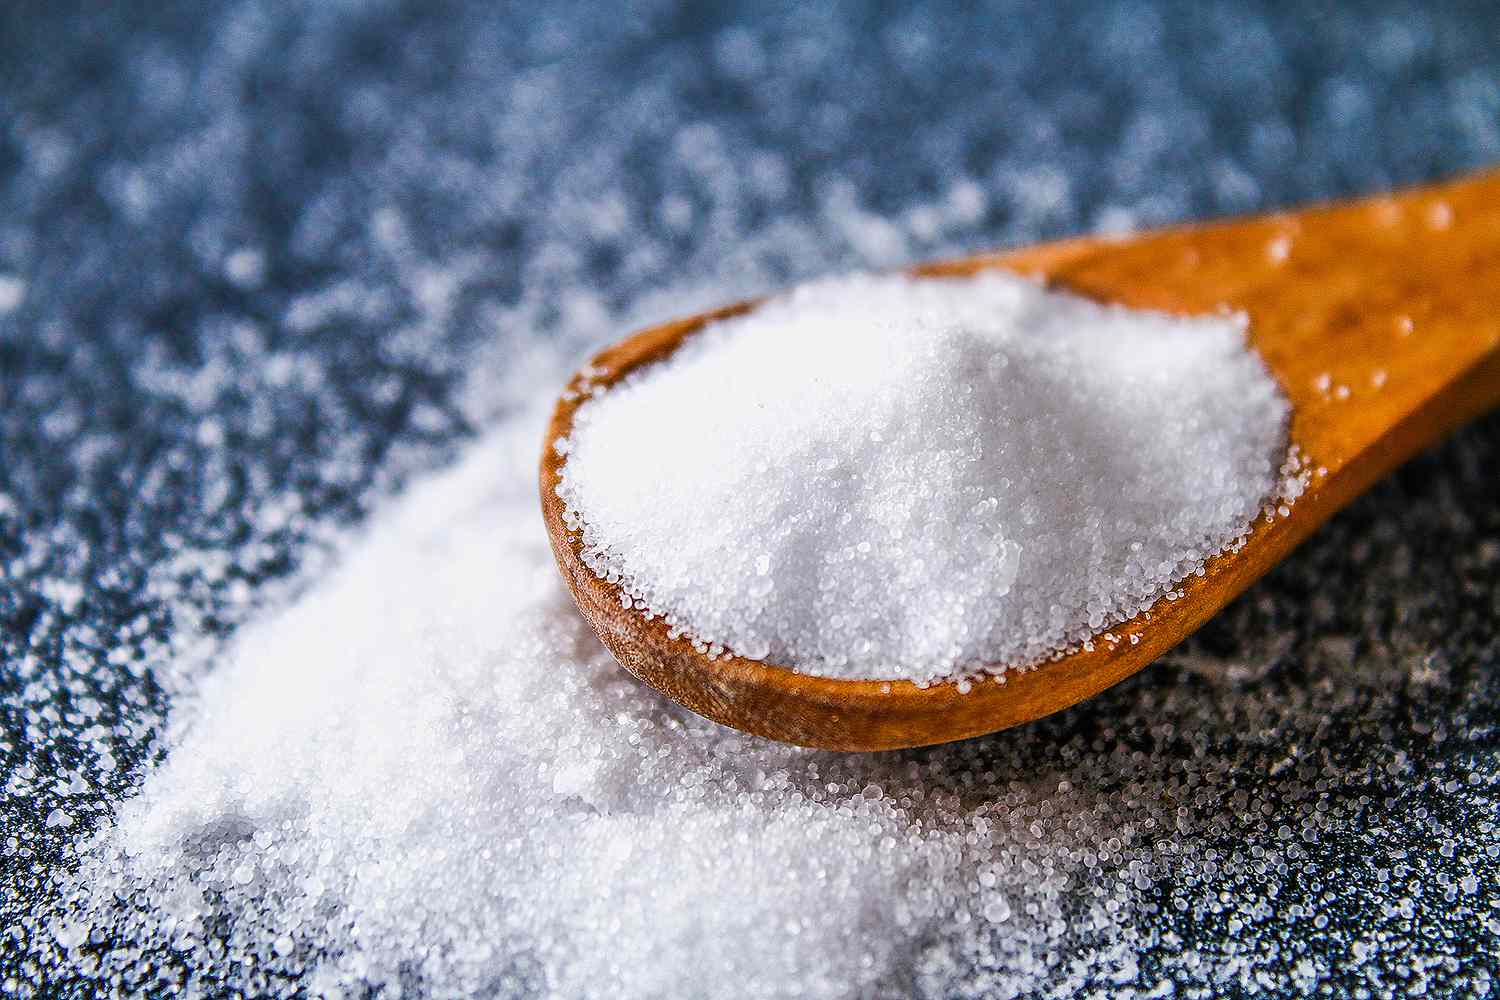 FDA yêu cầu các nhà hàng và nhà sản xuất thực phẩm cắt giảm việc sử dụng muối để tiết kiệm cuộc sống của người Mỹ